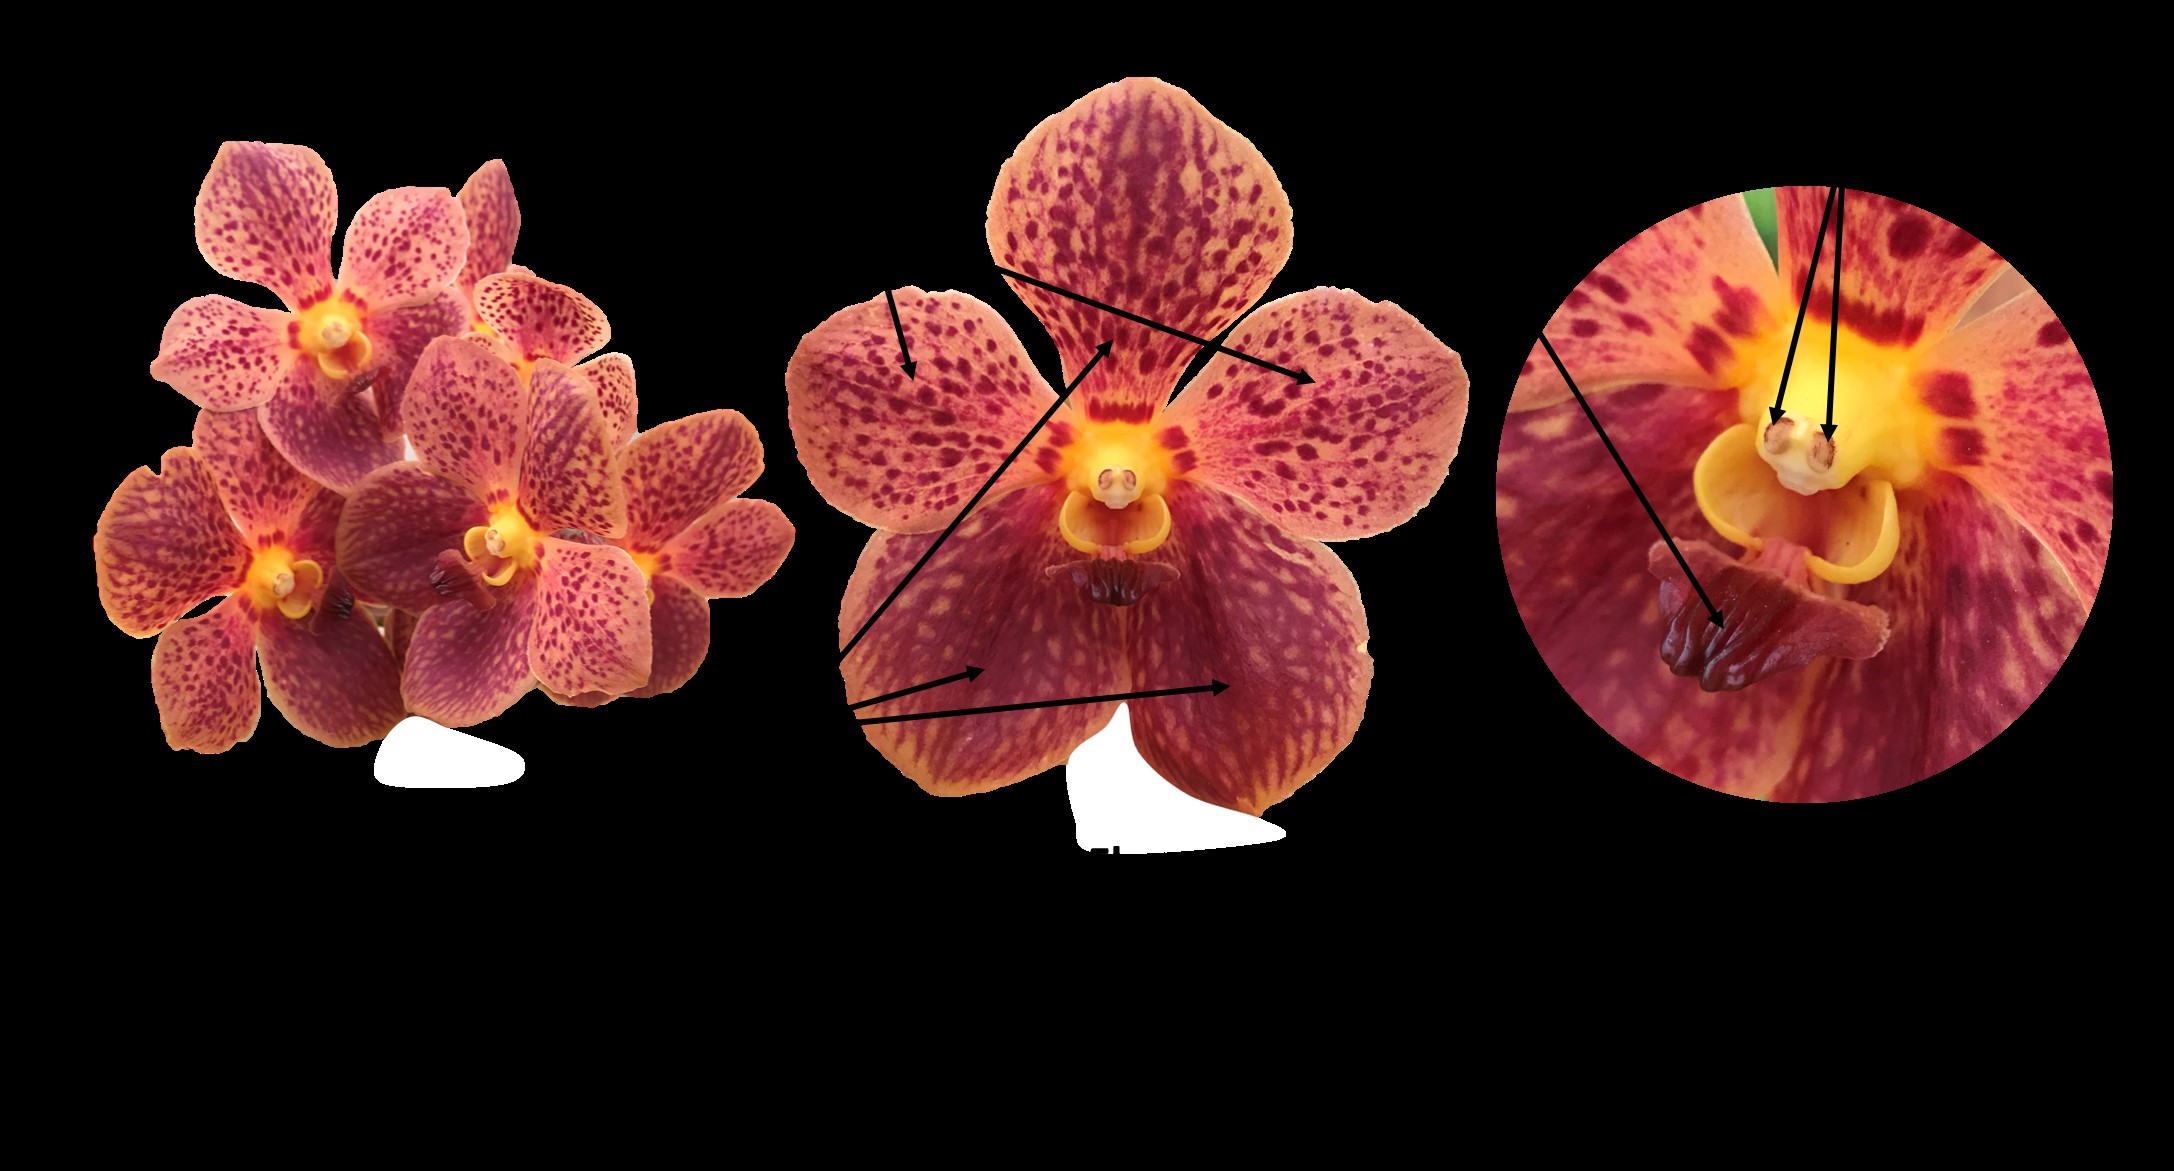 Inflorescencia y estructuras florales en una flor de una
orquídea del género Vanda. / Inflorescence and
floral structures in a flower of an orchid of the genus Vanda.